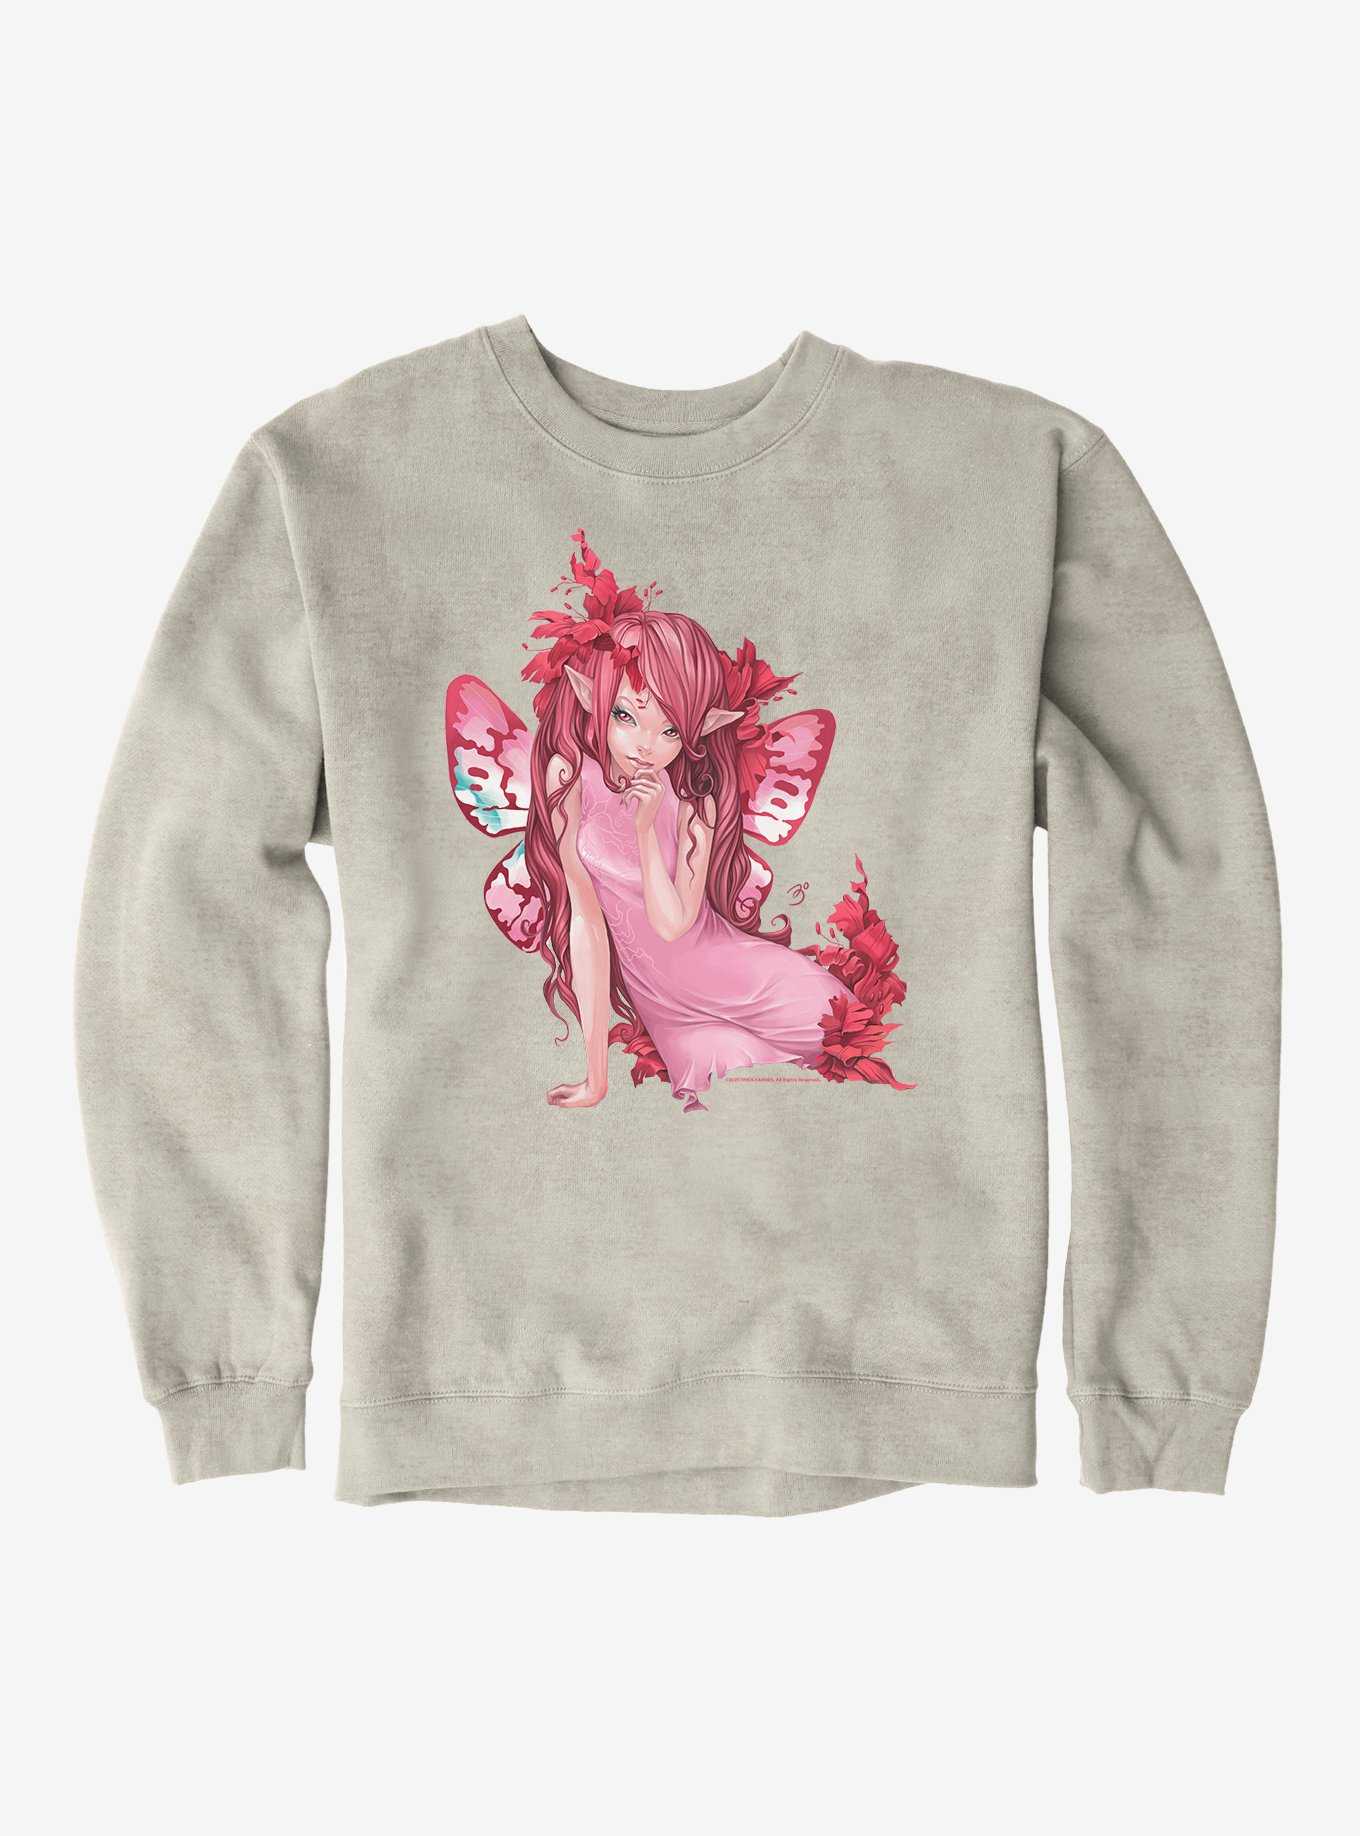 Fairies By Trick Dream Girl Fairy Sweatshirt, , hi-res